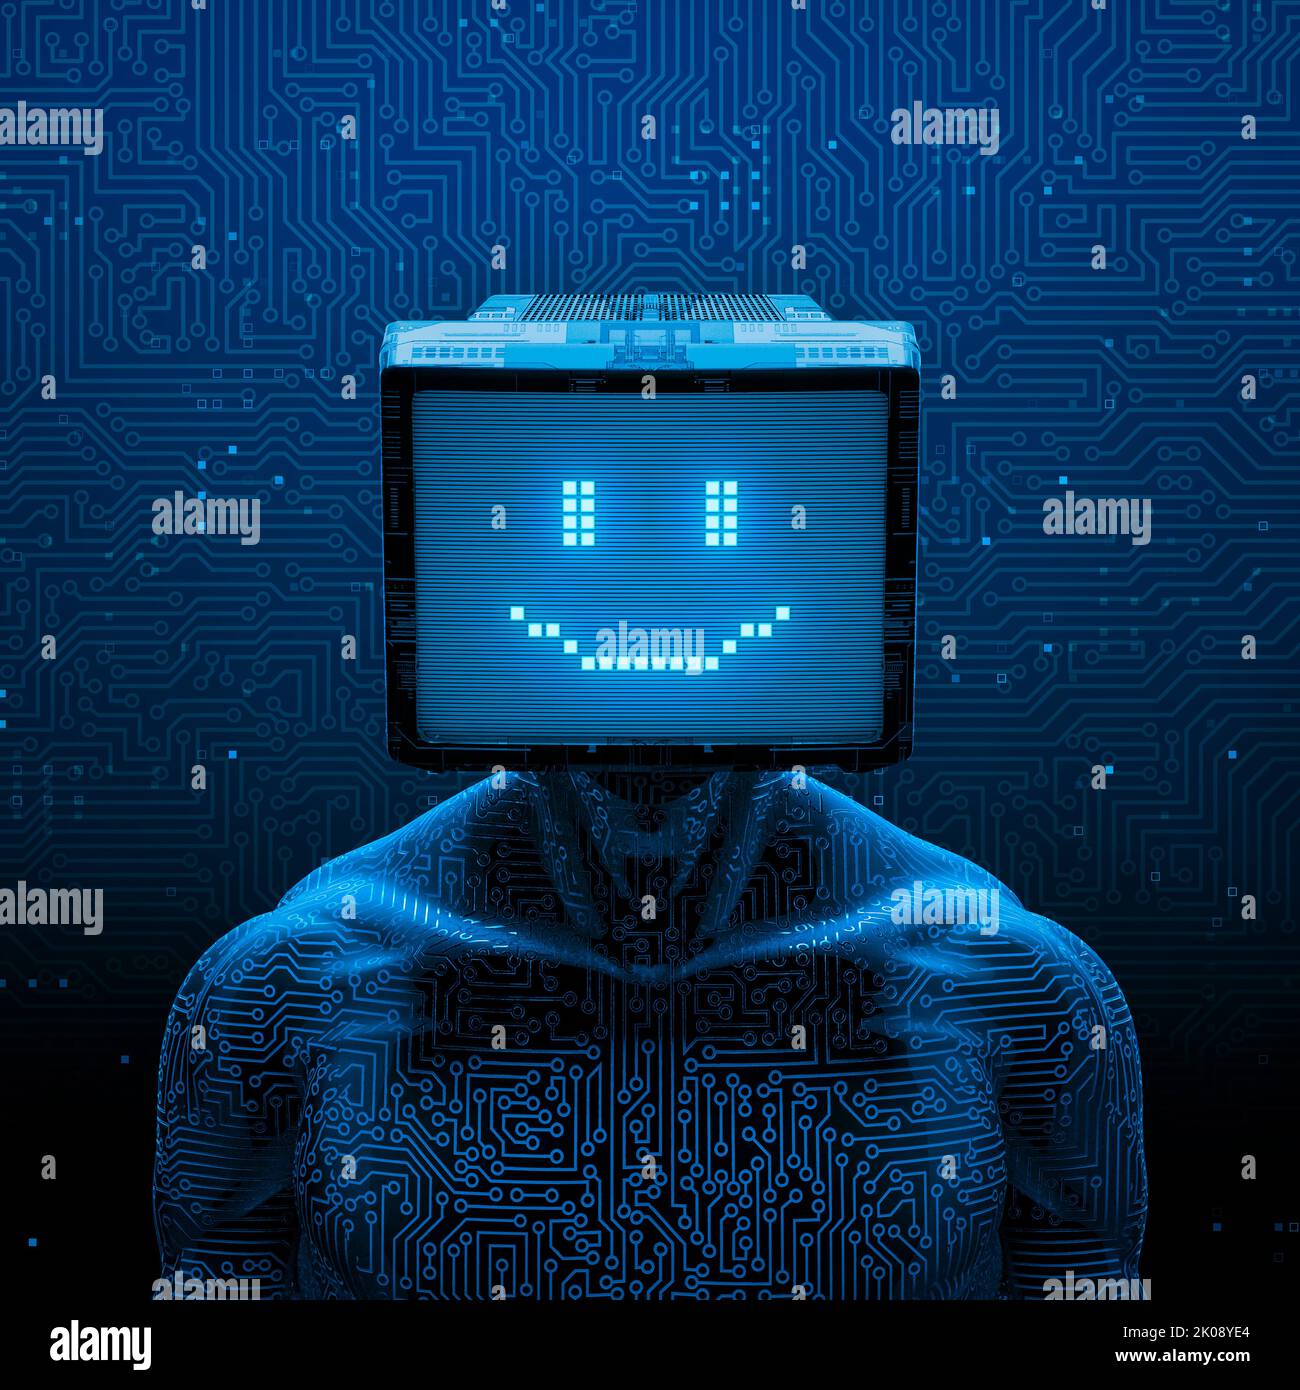 Lächelnde Gamer künstliche Intelligenz - 3D Illustration von dunklen Pixel Lächeln konfrontiert männlichen Roboter Figur mit Computer-Monitor-Kopf auf Schaltkreis Hintergrund Stockfoto